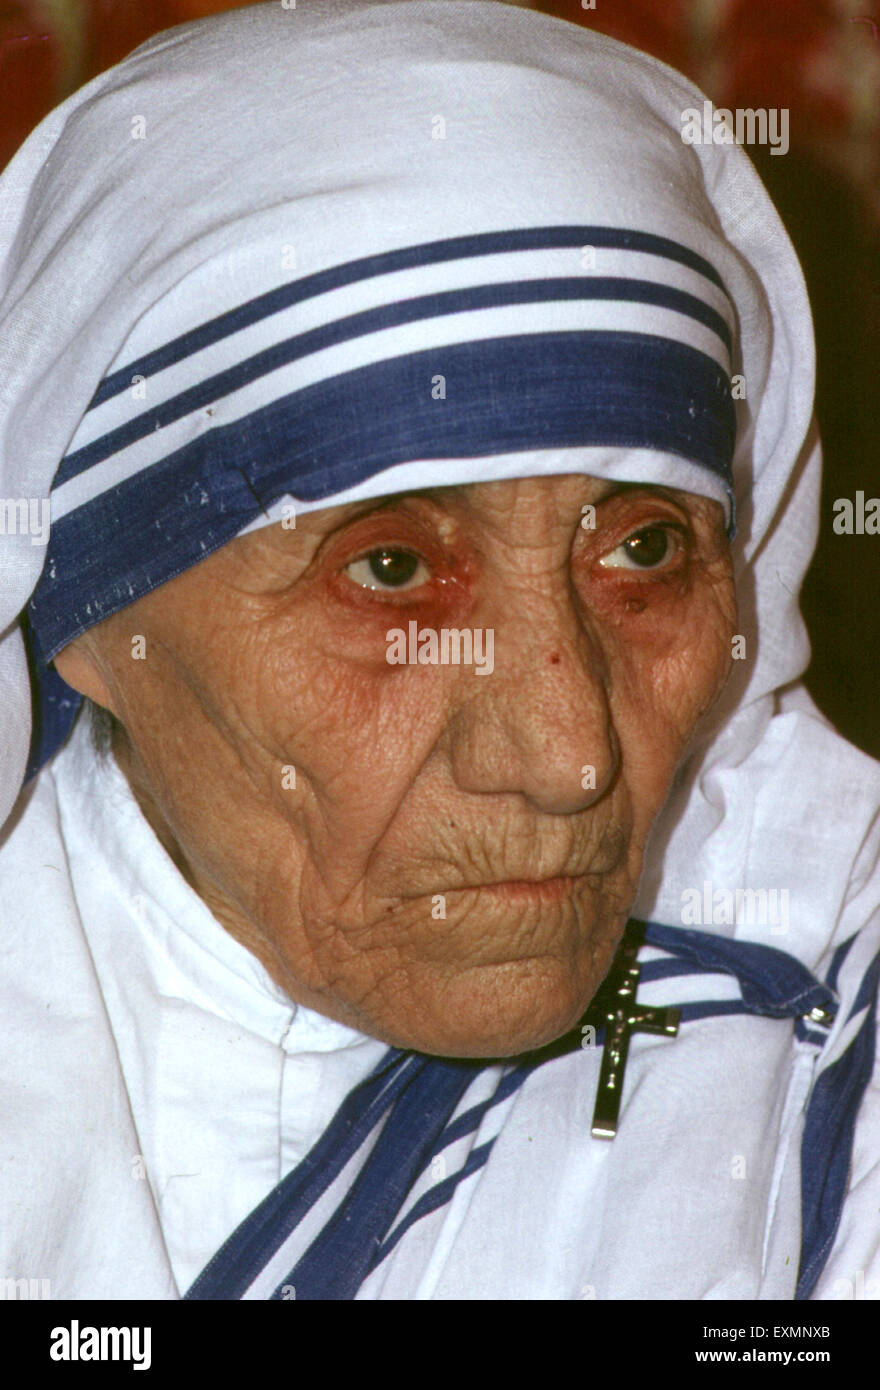 Die selige Mutter Teresa von Kalkutta geboren Agnes Gonxha Bojaxhiu allgemein bekannt als Mutter Teresa von Kalkutta war eine albanische – geboren indische Ordensgründerin. Stockfoto